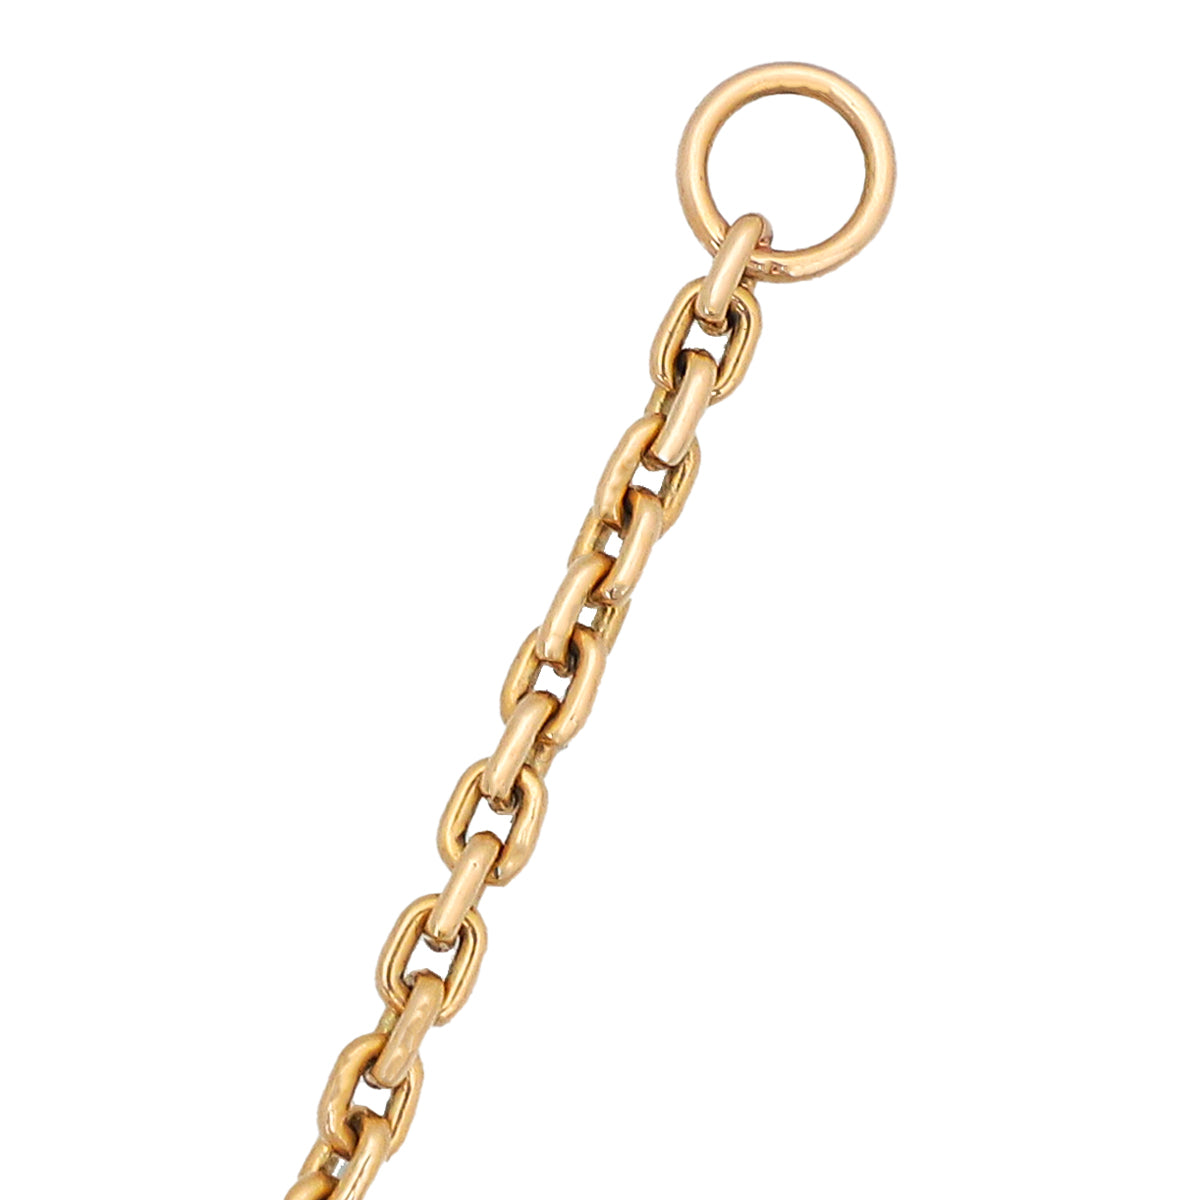 Louis Vuitton 18K Tricolor Gold Diamond Idylle Blossom Y Pendant Necklace